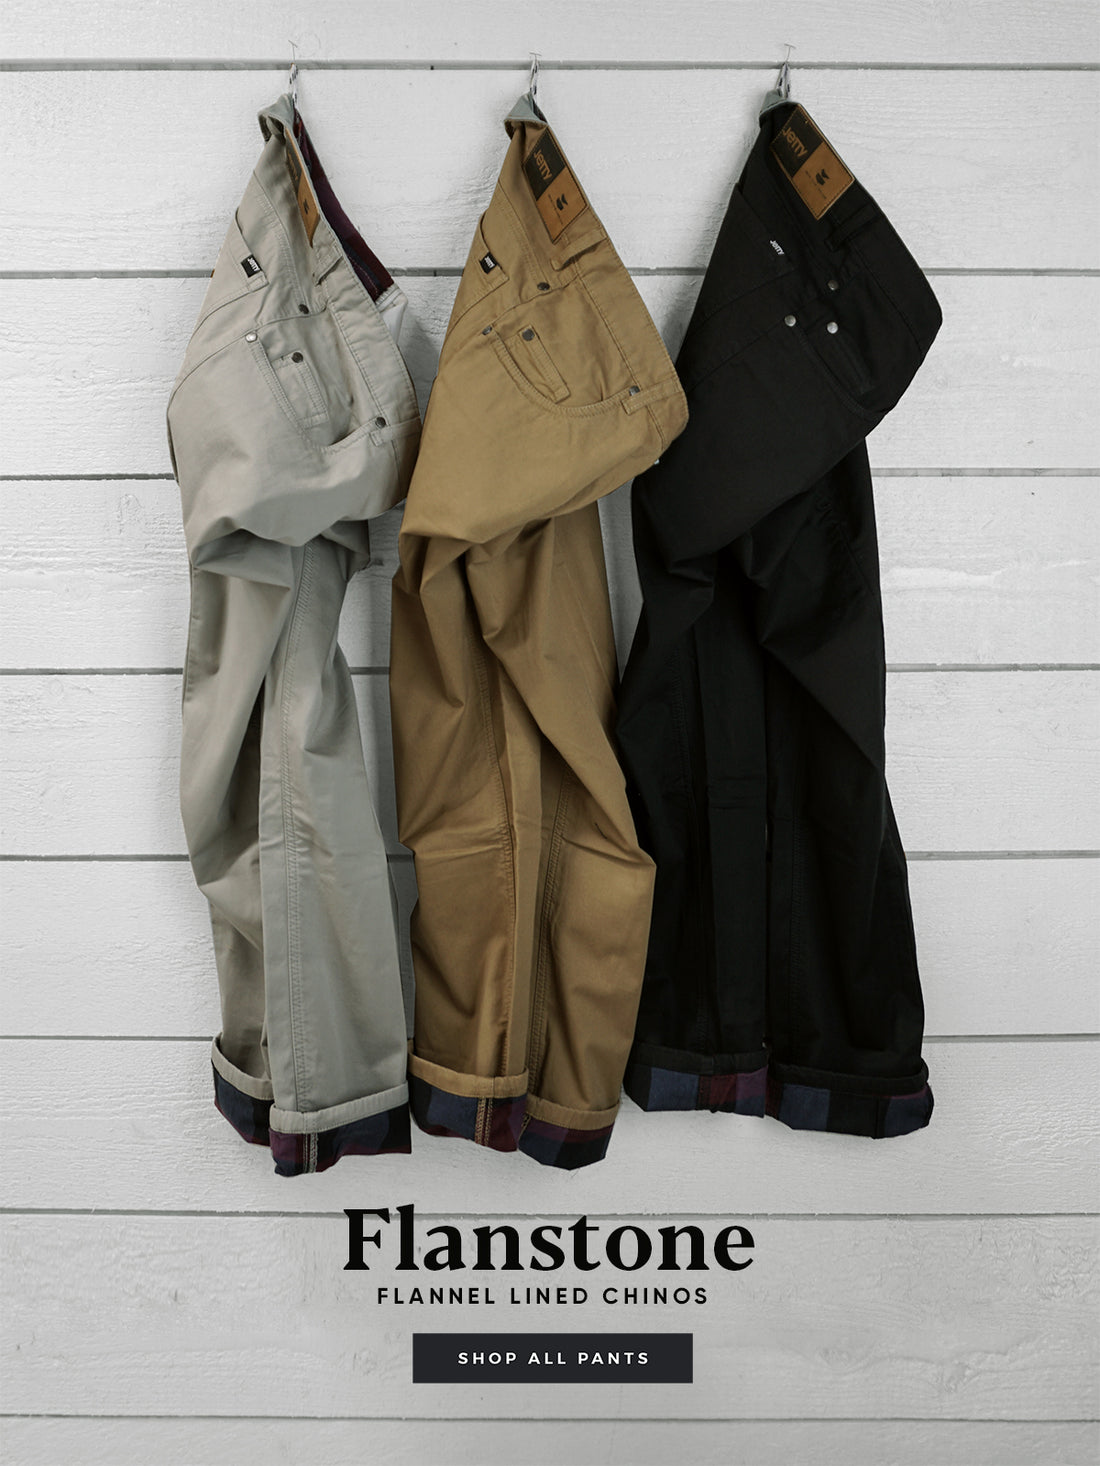 The Flanstones!